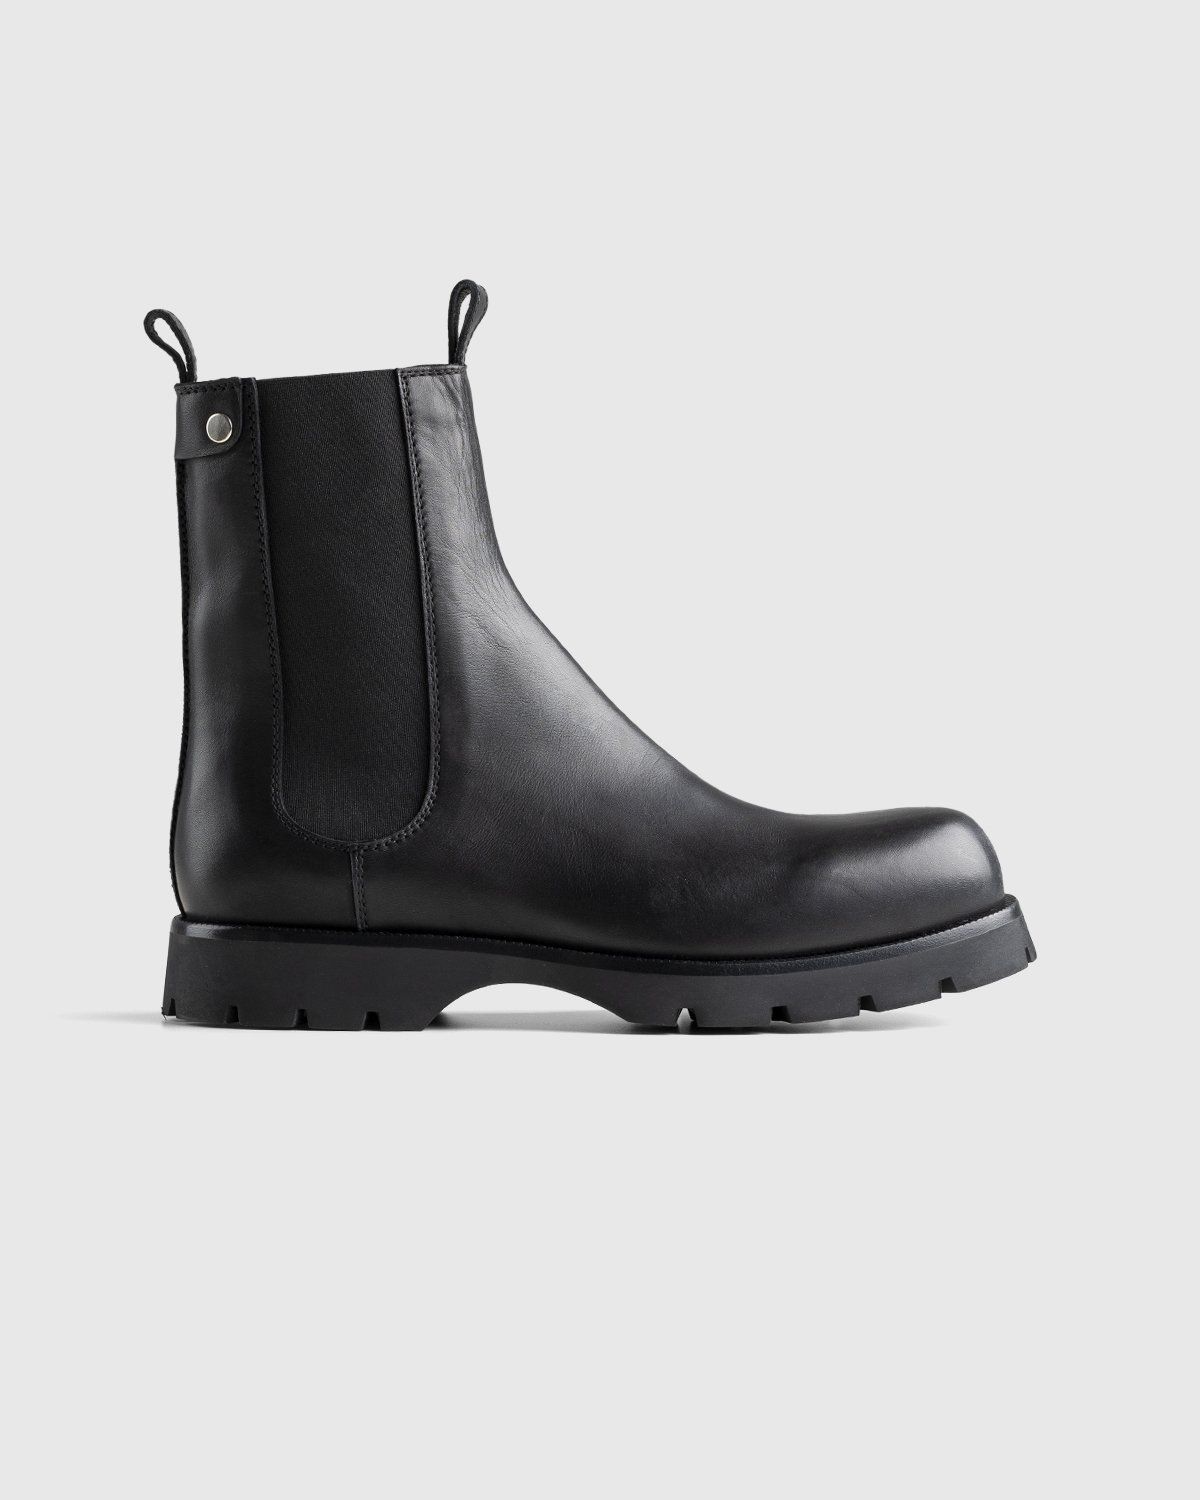 Jil Sander – Chelsea Boots Black - Image 1